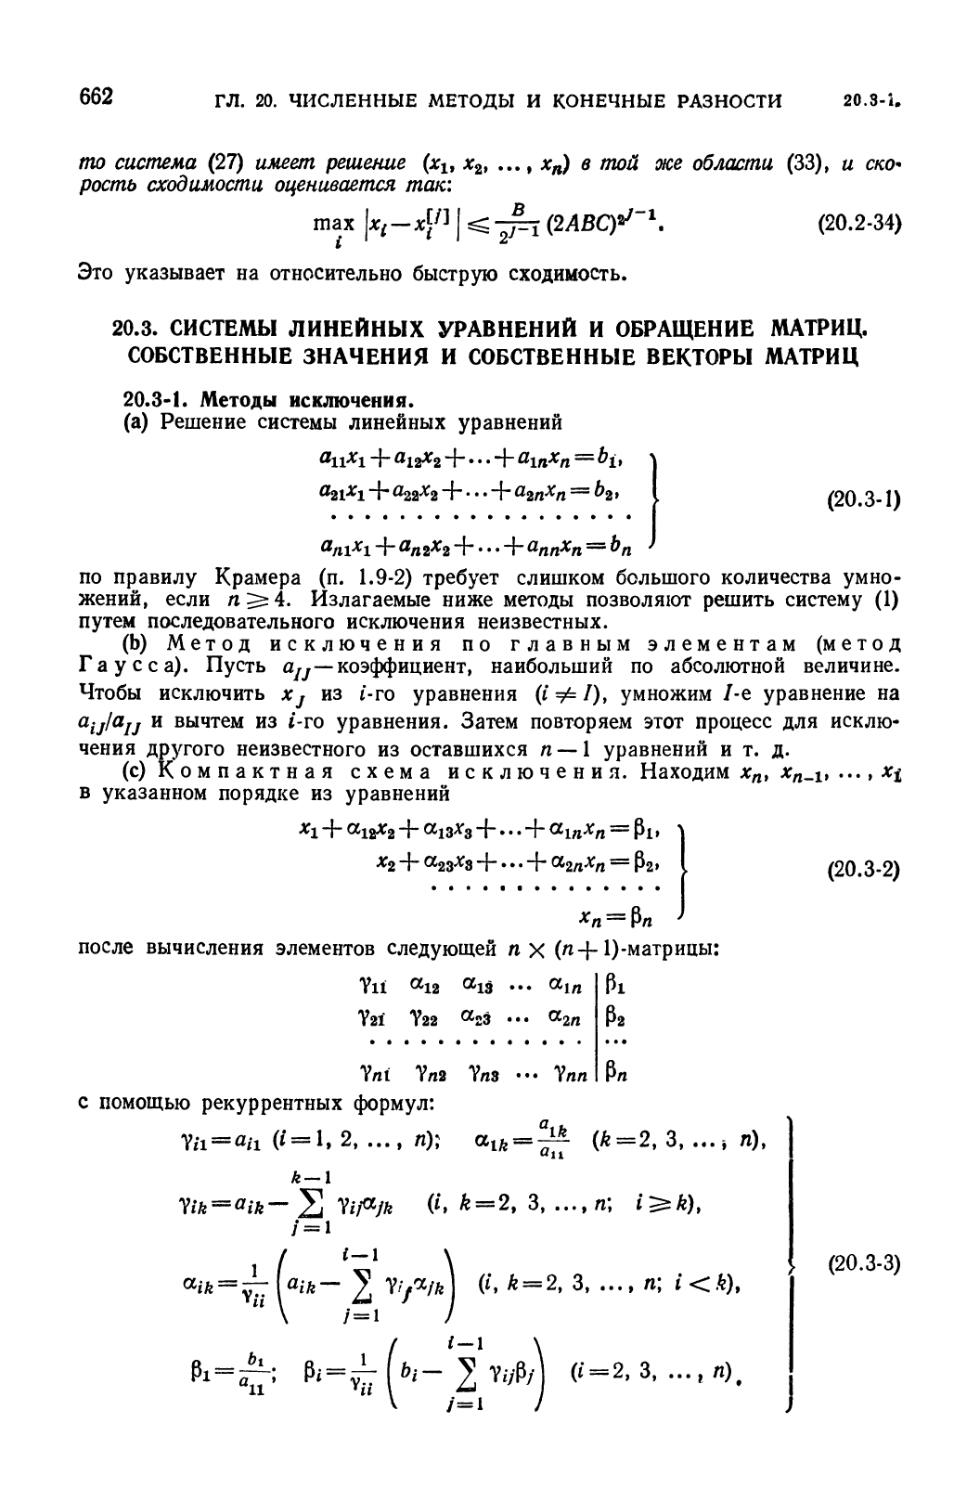 20.3. Системы линейных уравнений и обращение матриц. Собственные значения и собственные векторы матриц